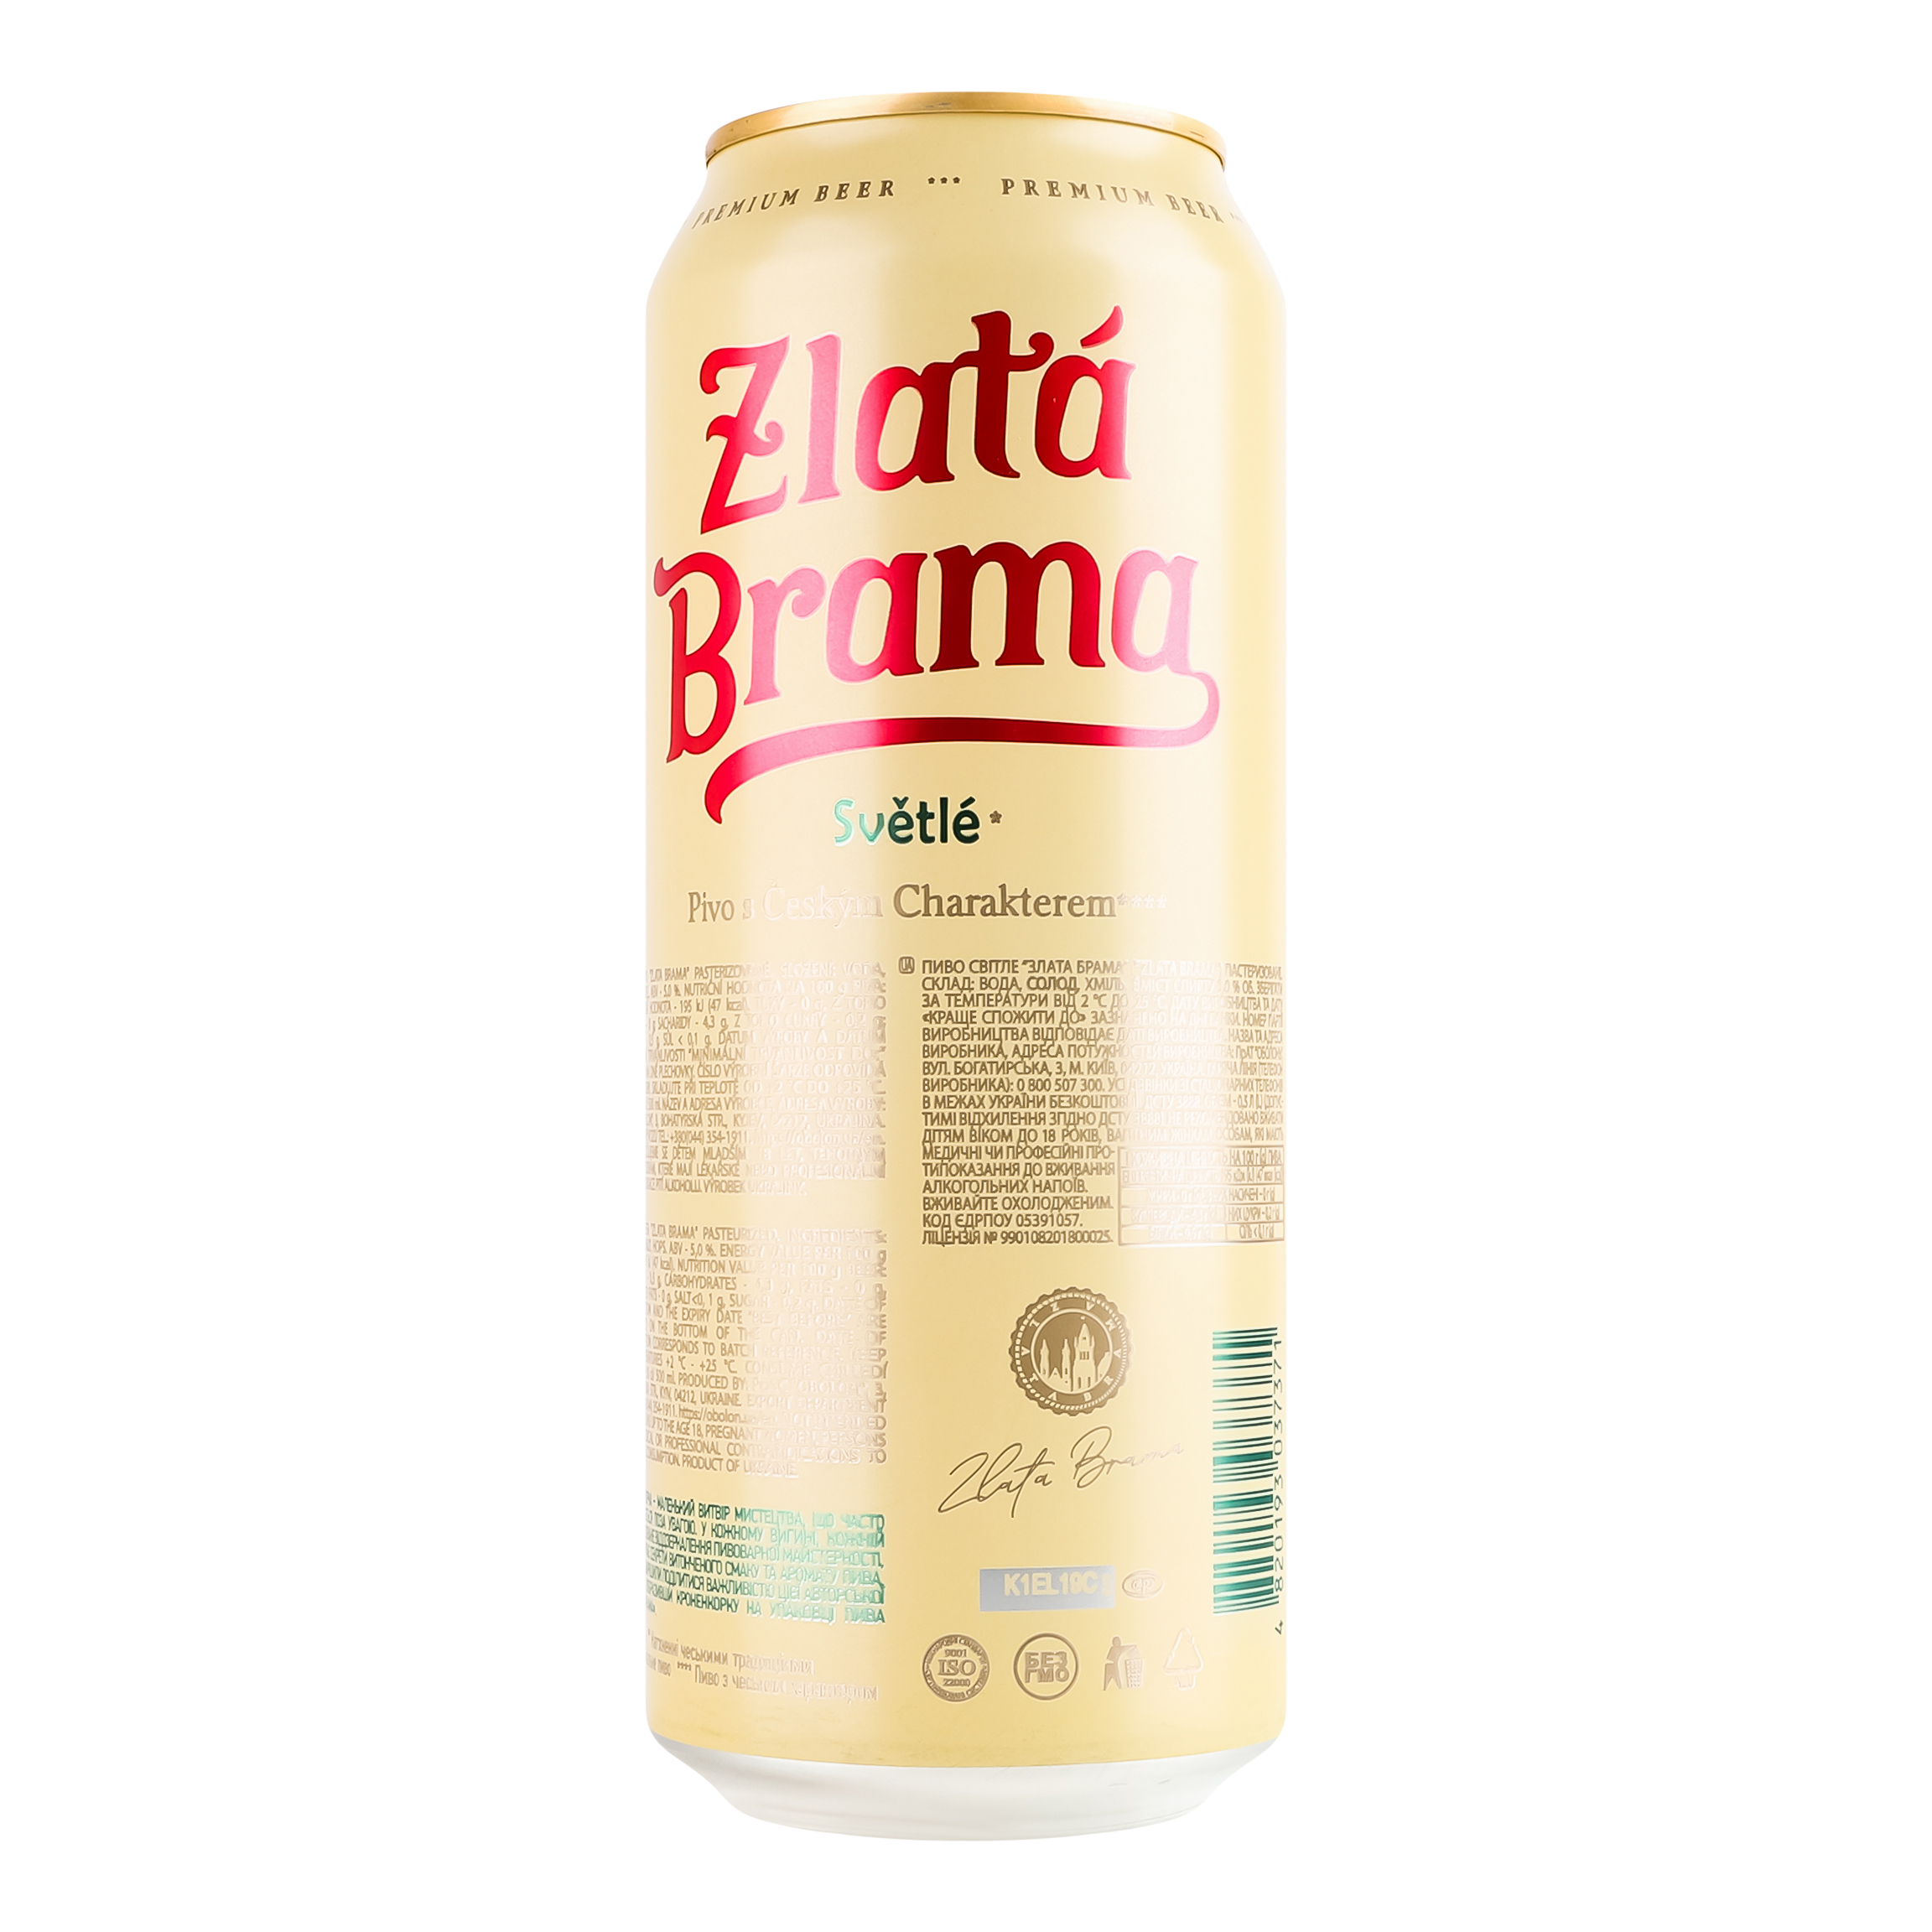 Пиво Zlata Brama светлое 5% 0.5 л ж/б - фото 3